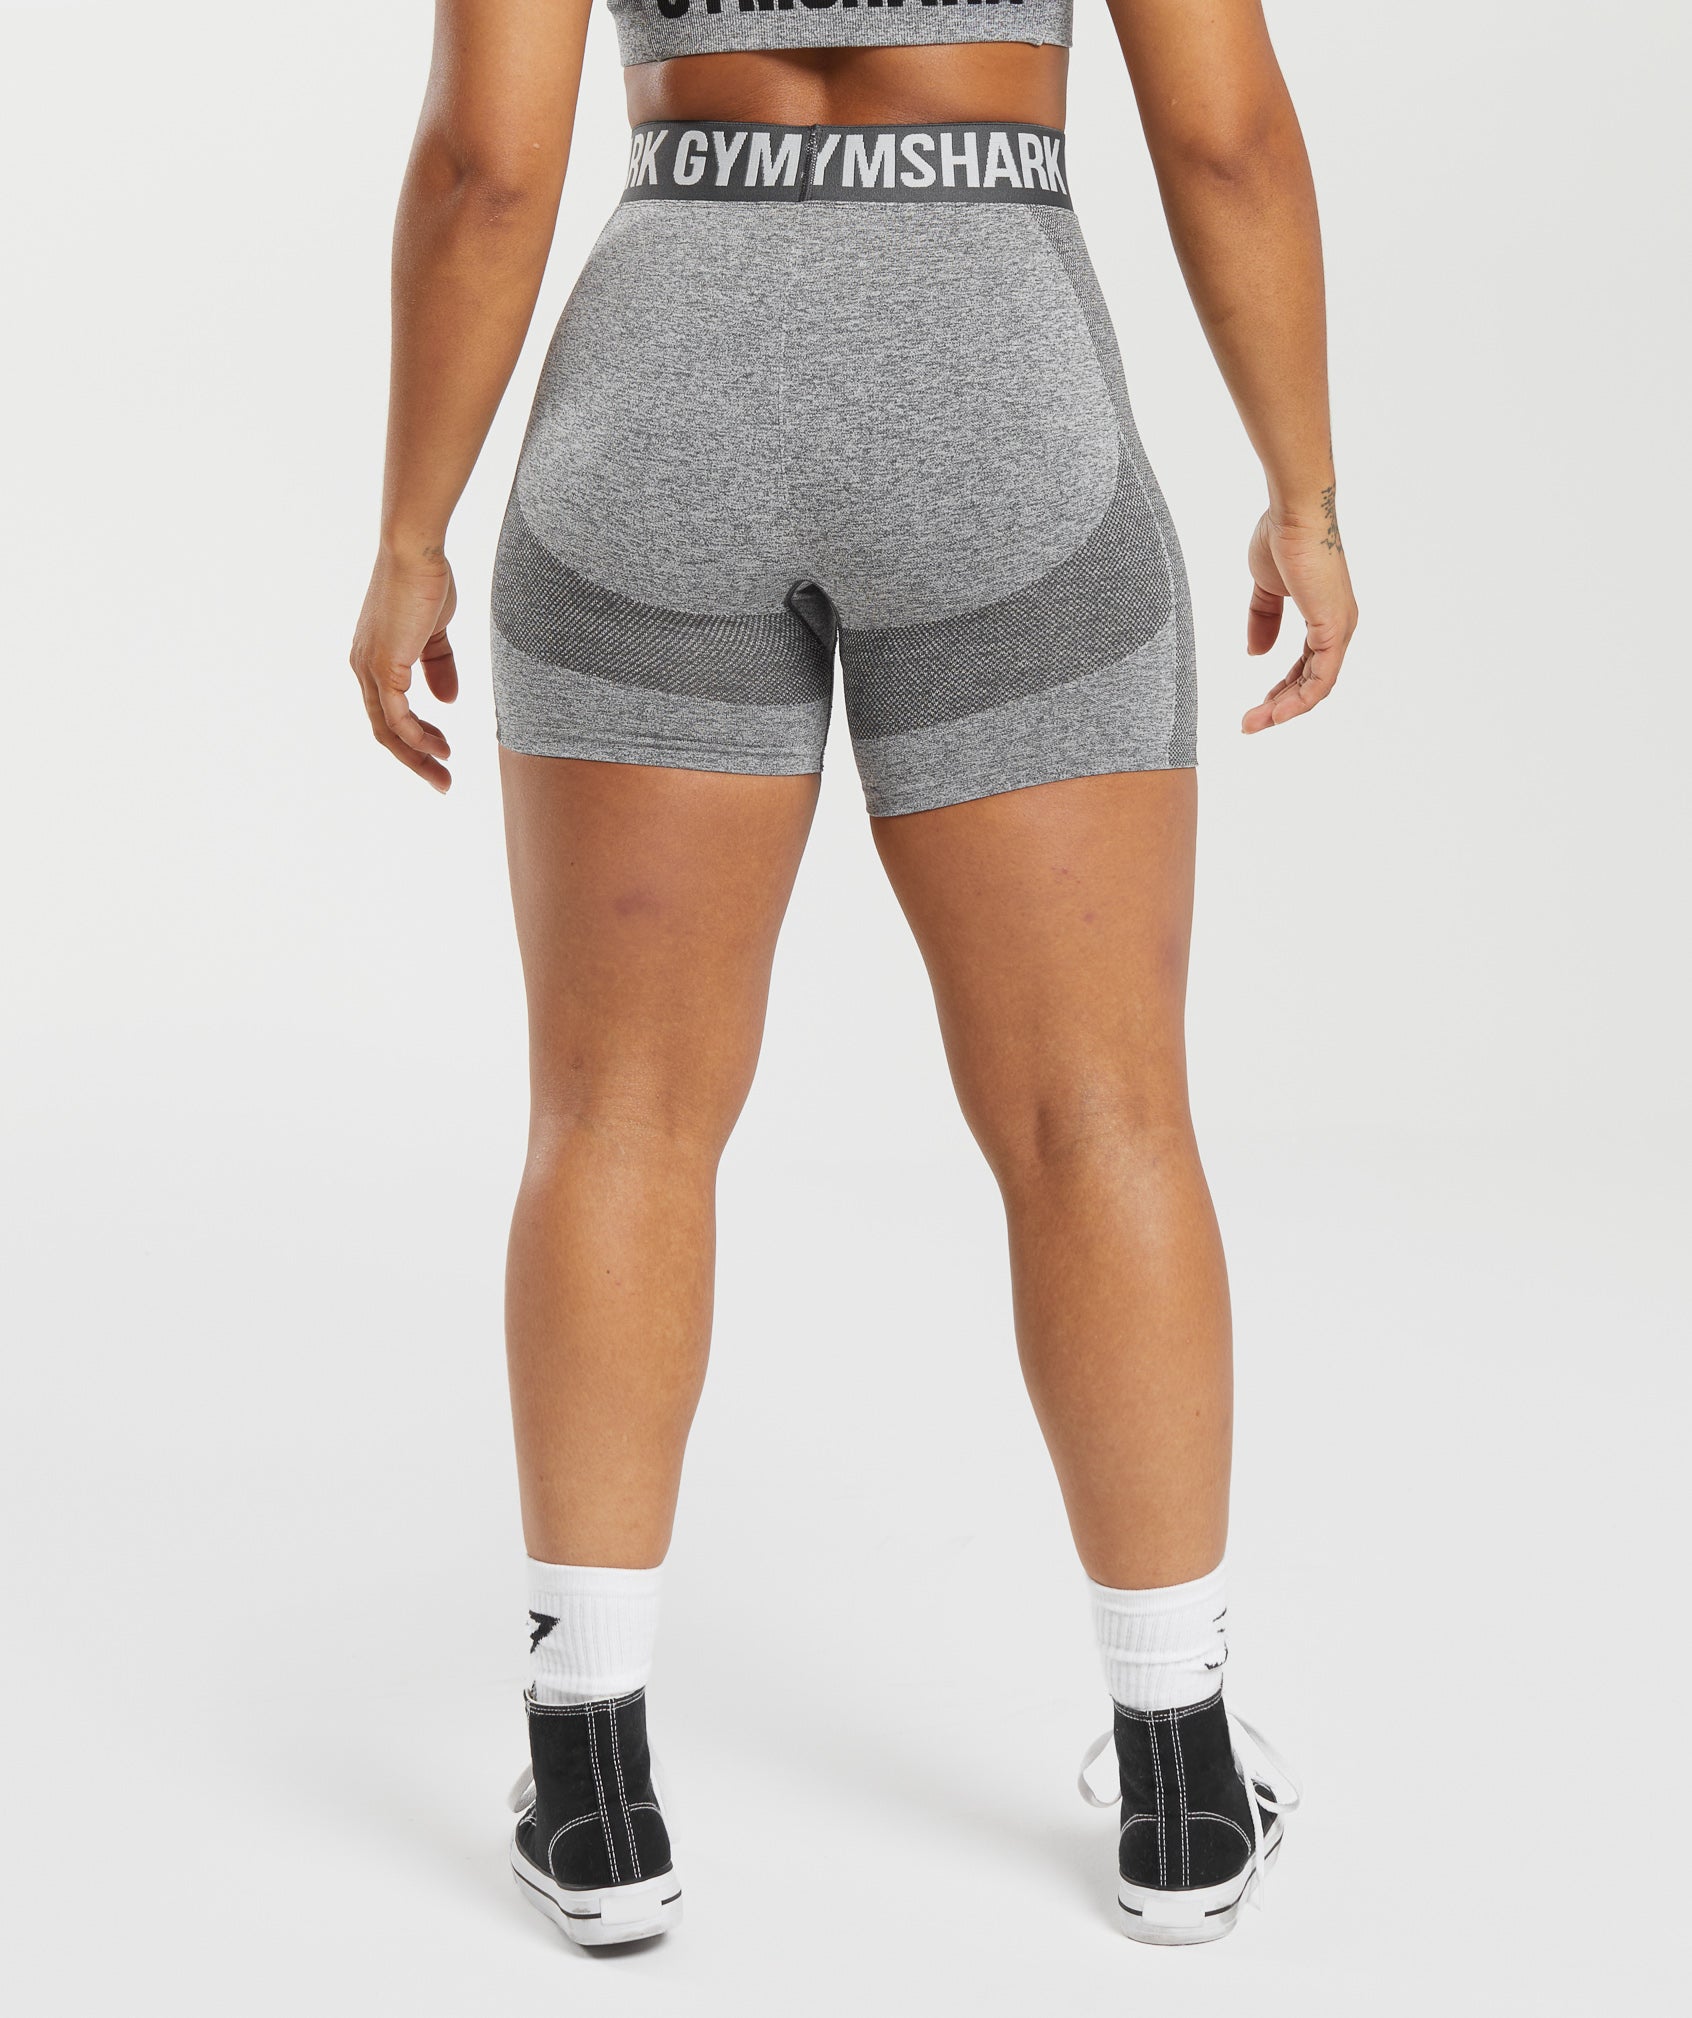 Flex Shorts product image 2